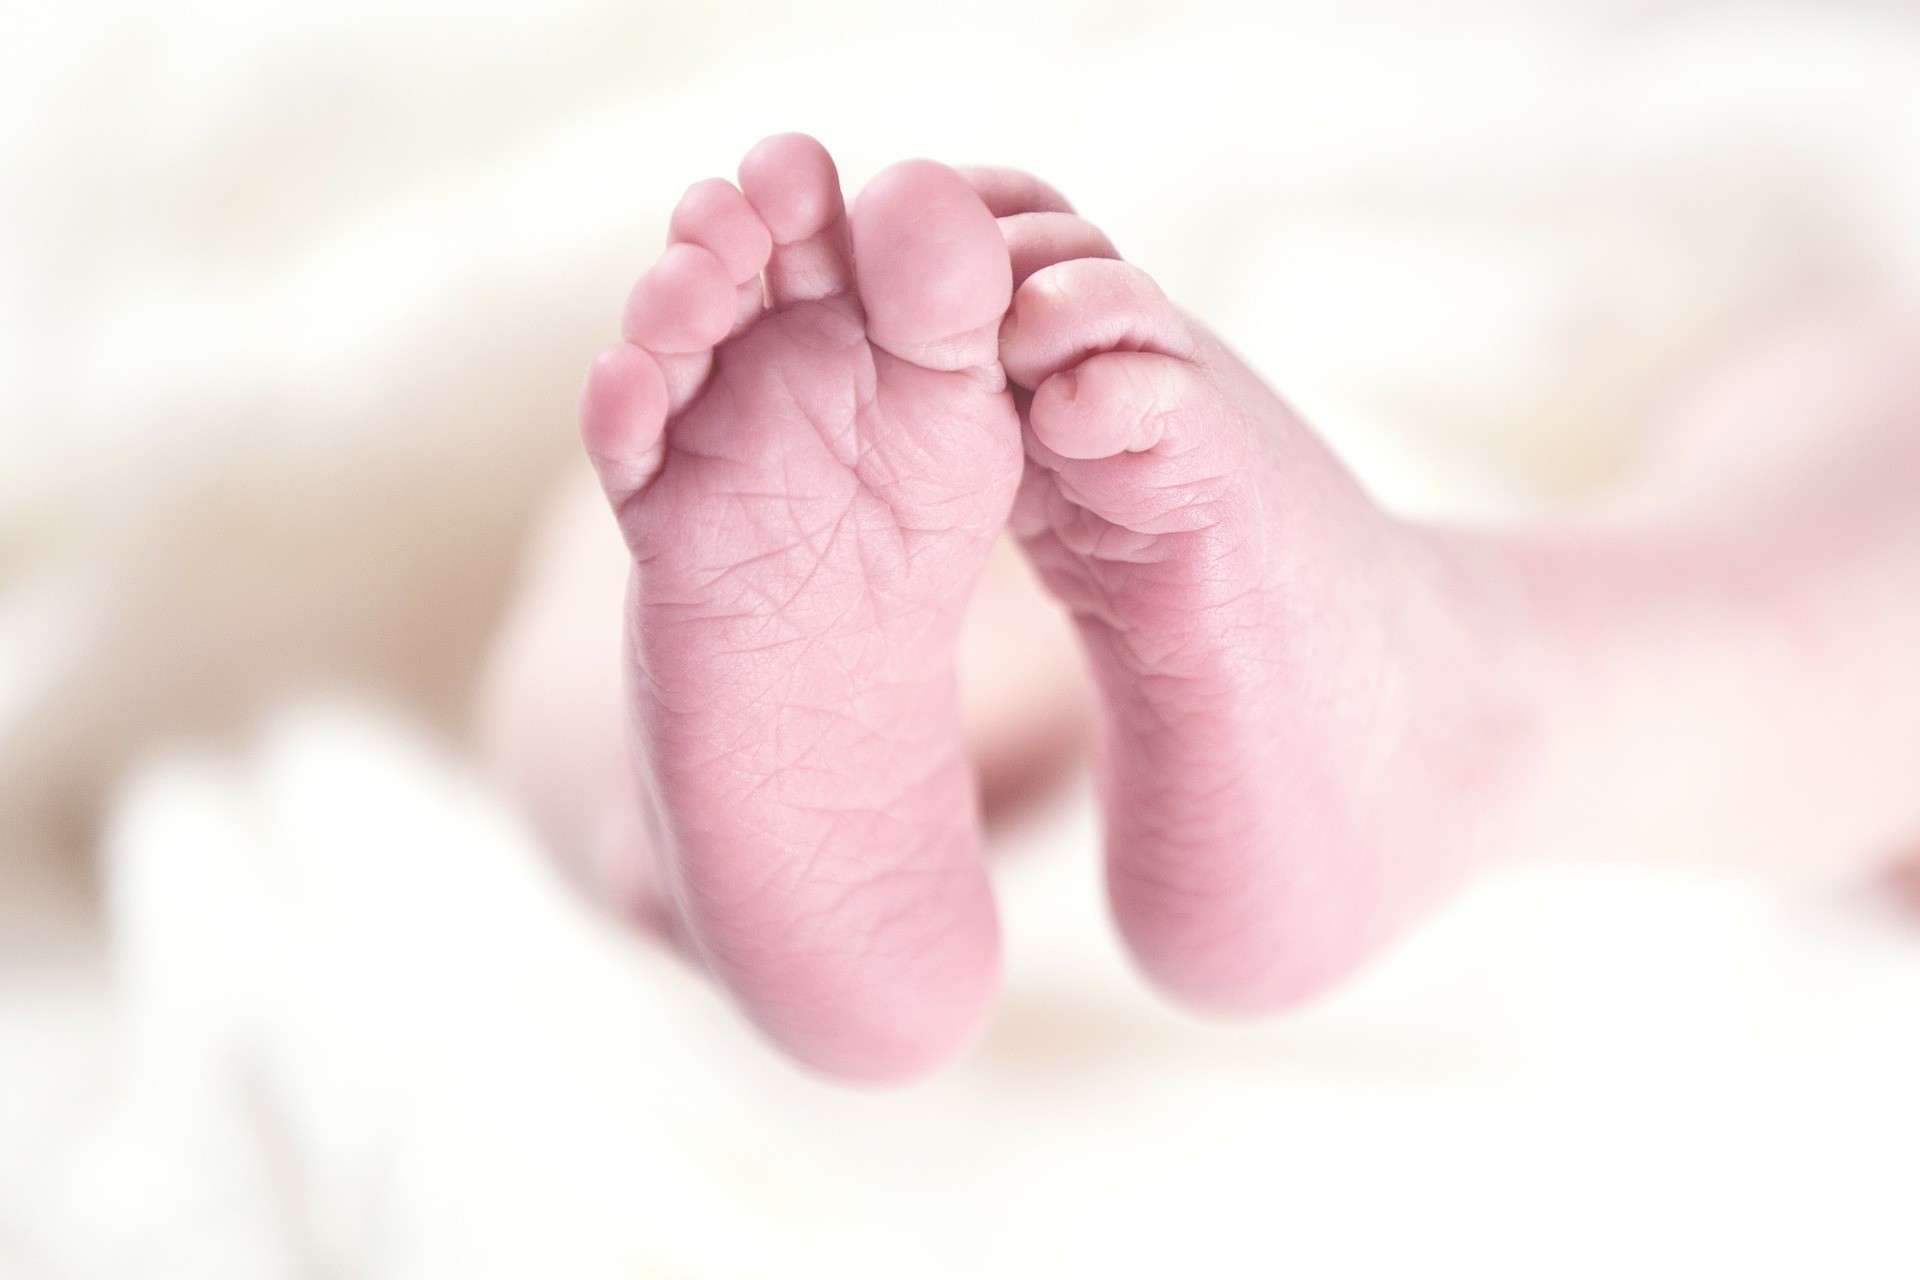 Bebês natimortos podem ter nome registrado em cartório; 'Importante para nós, como família', diz mãe de criança que nasceu morta no DF